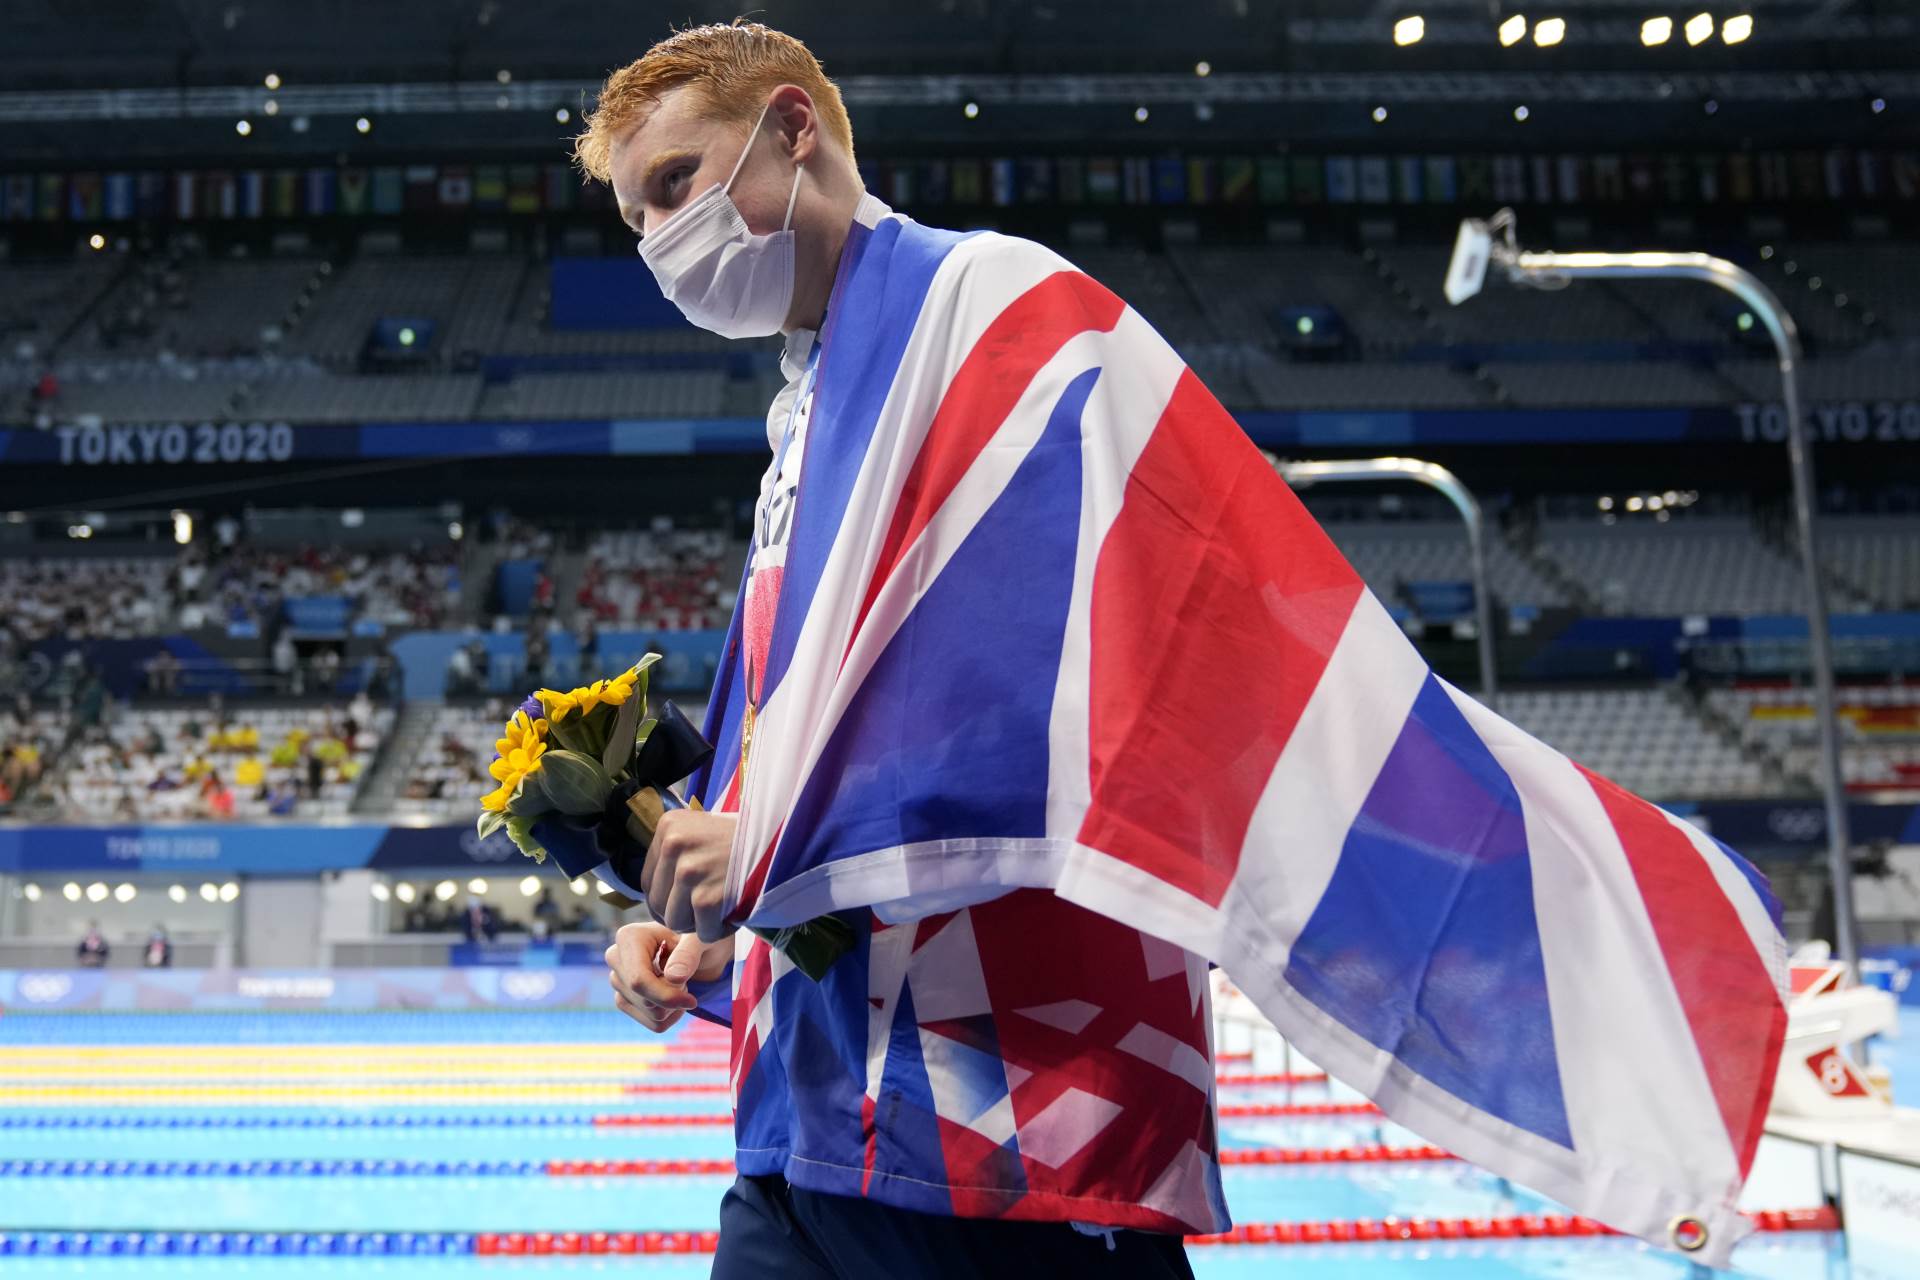  plivanje olimpijske igre britanci prva dva mjesta nakon 113 godina 